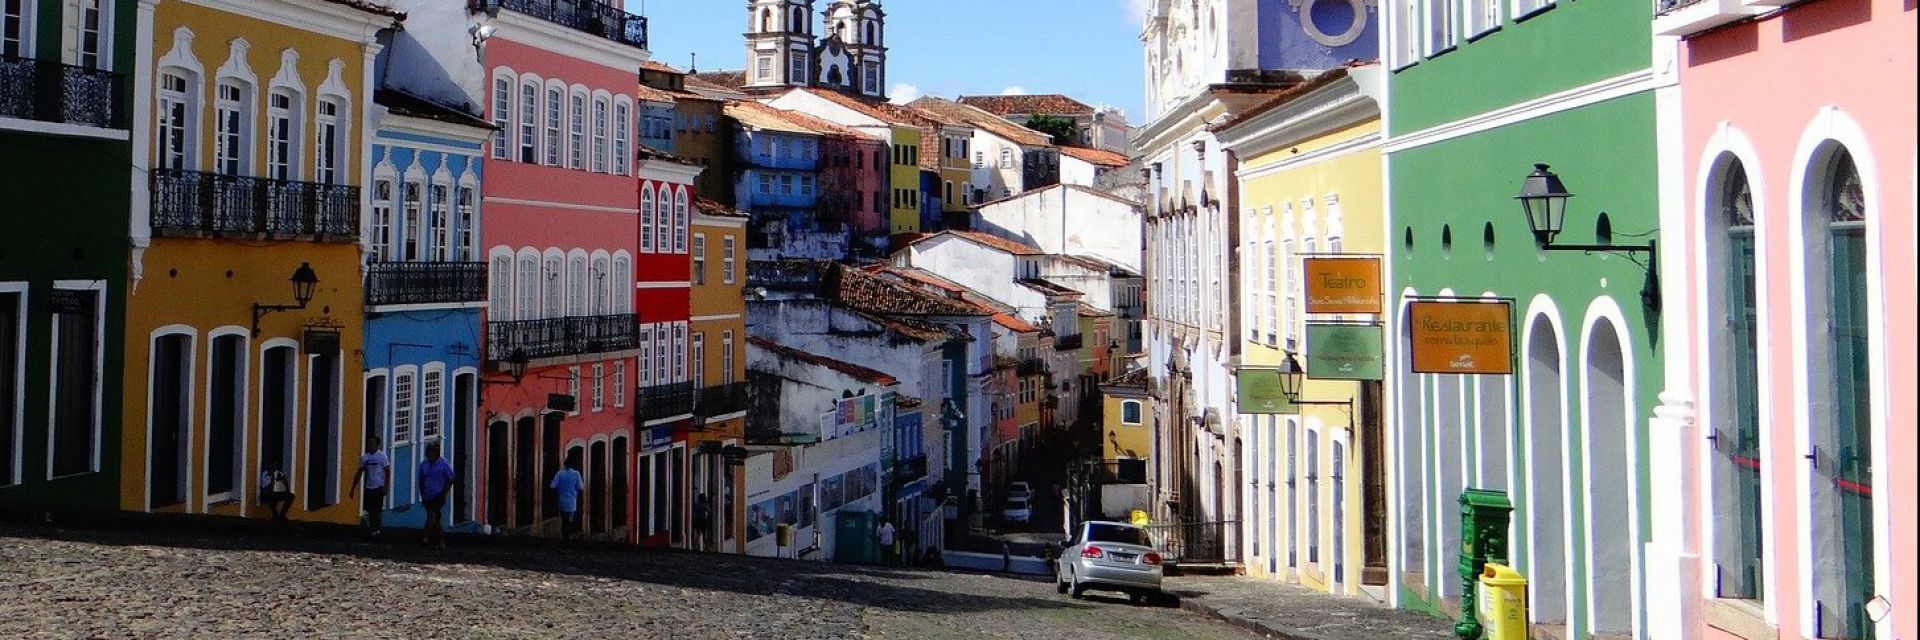 Conheça as principais cidades turísticas da Bahia